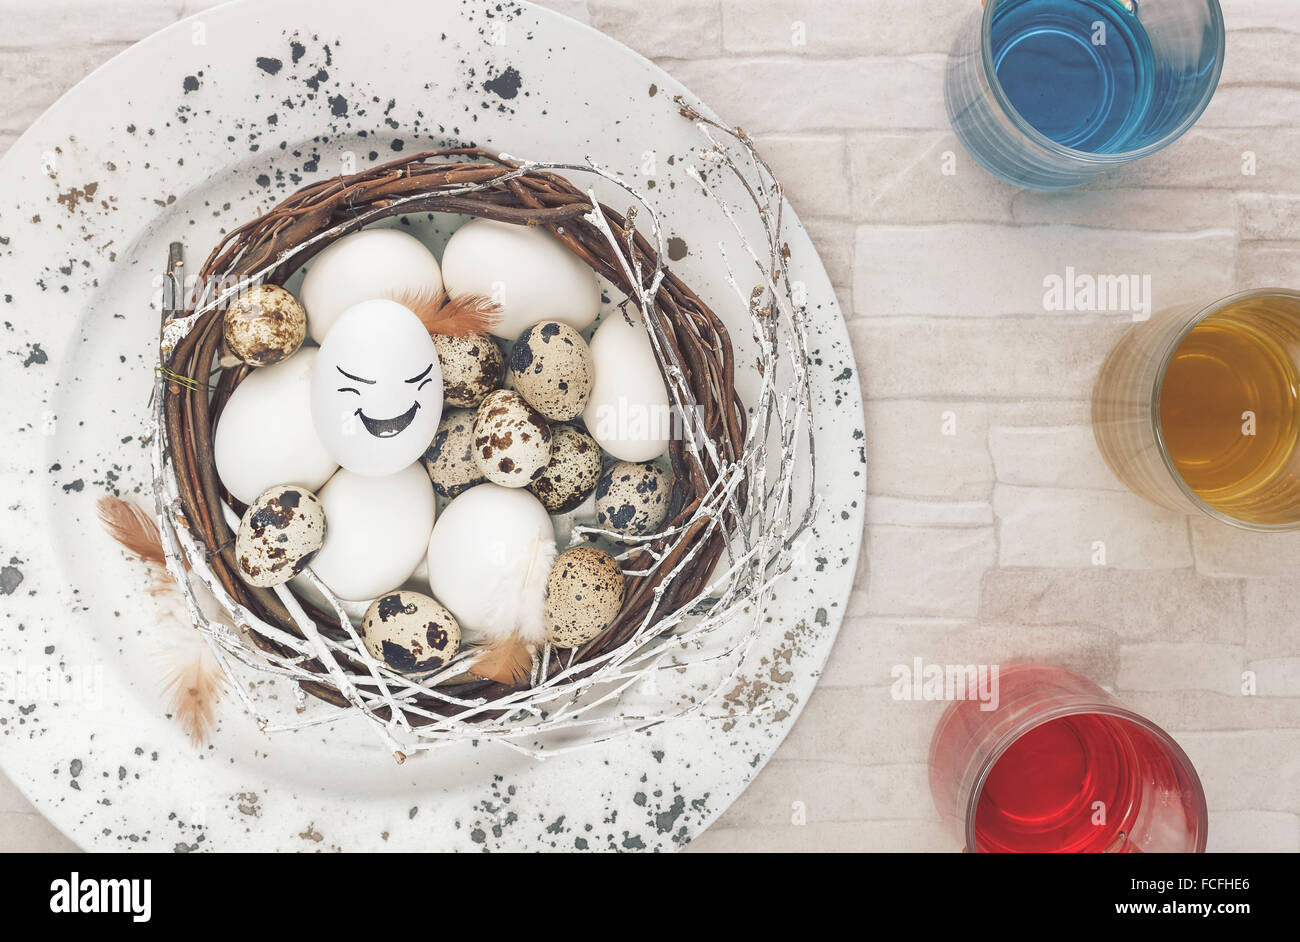 Huevos de Pascua colorear.Preparación para teñir los huevos de Pascua. Vista superior con un estilo retro de procesamiento. Luz natural Foto de stock